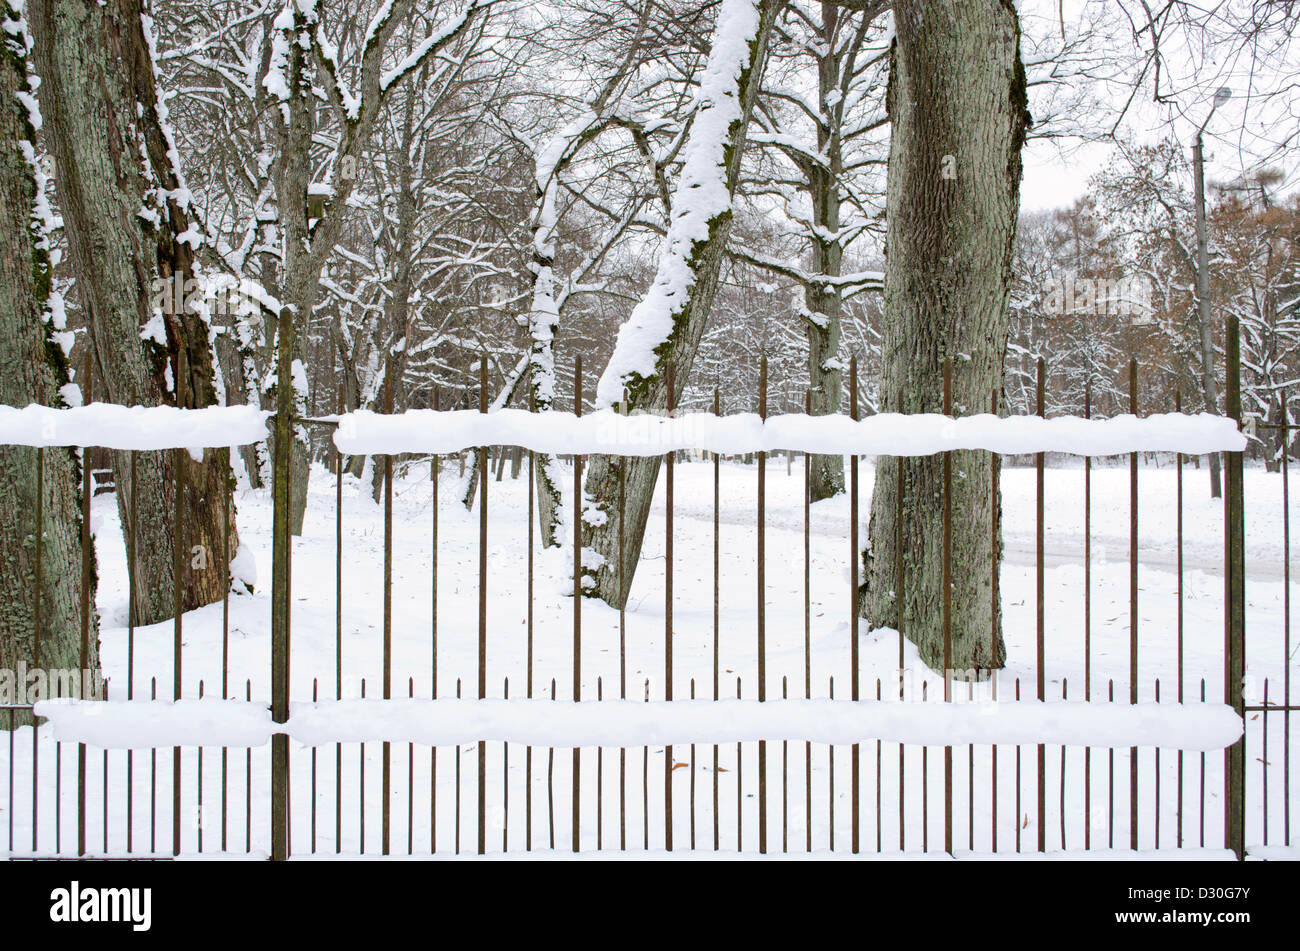 Rusty rétro clôture métallique recouvert de neige dans le parc et de vieux troncs d'arbres en hiver. Banque D'Images